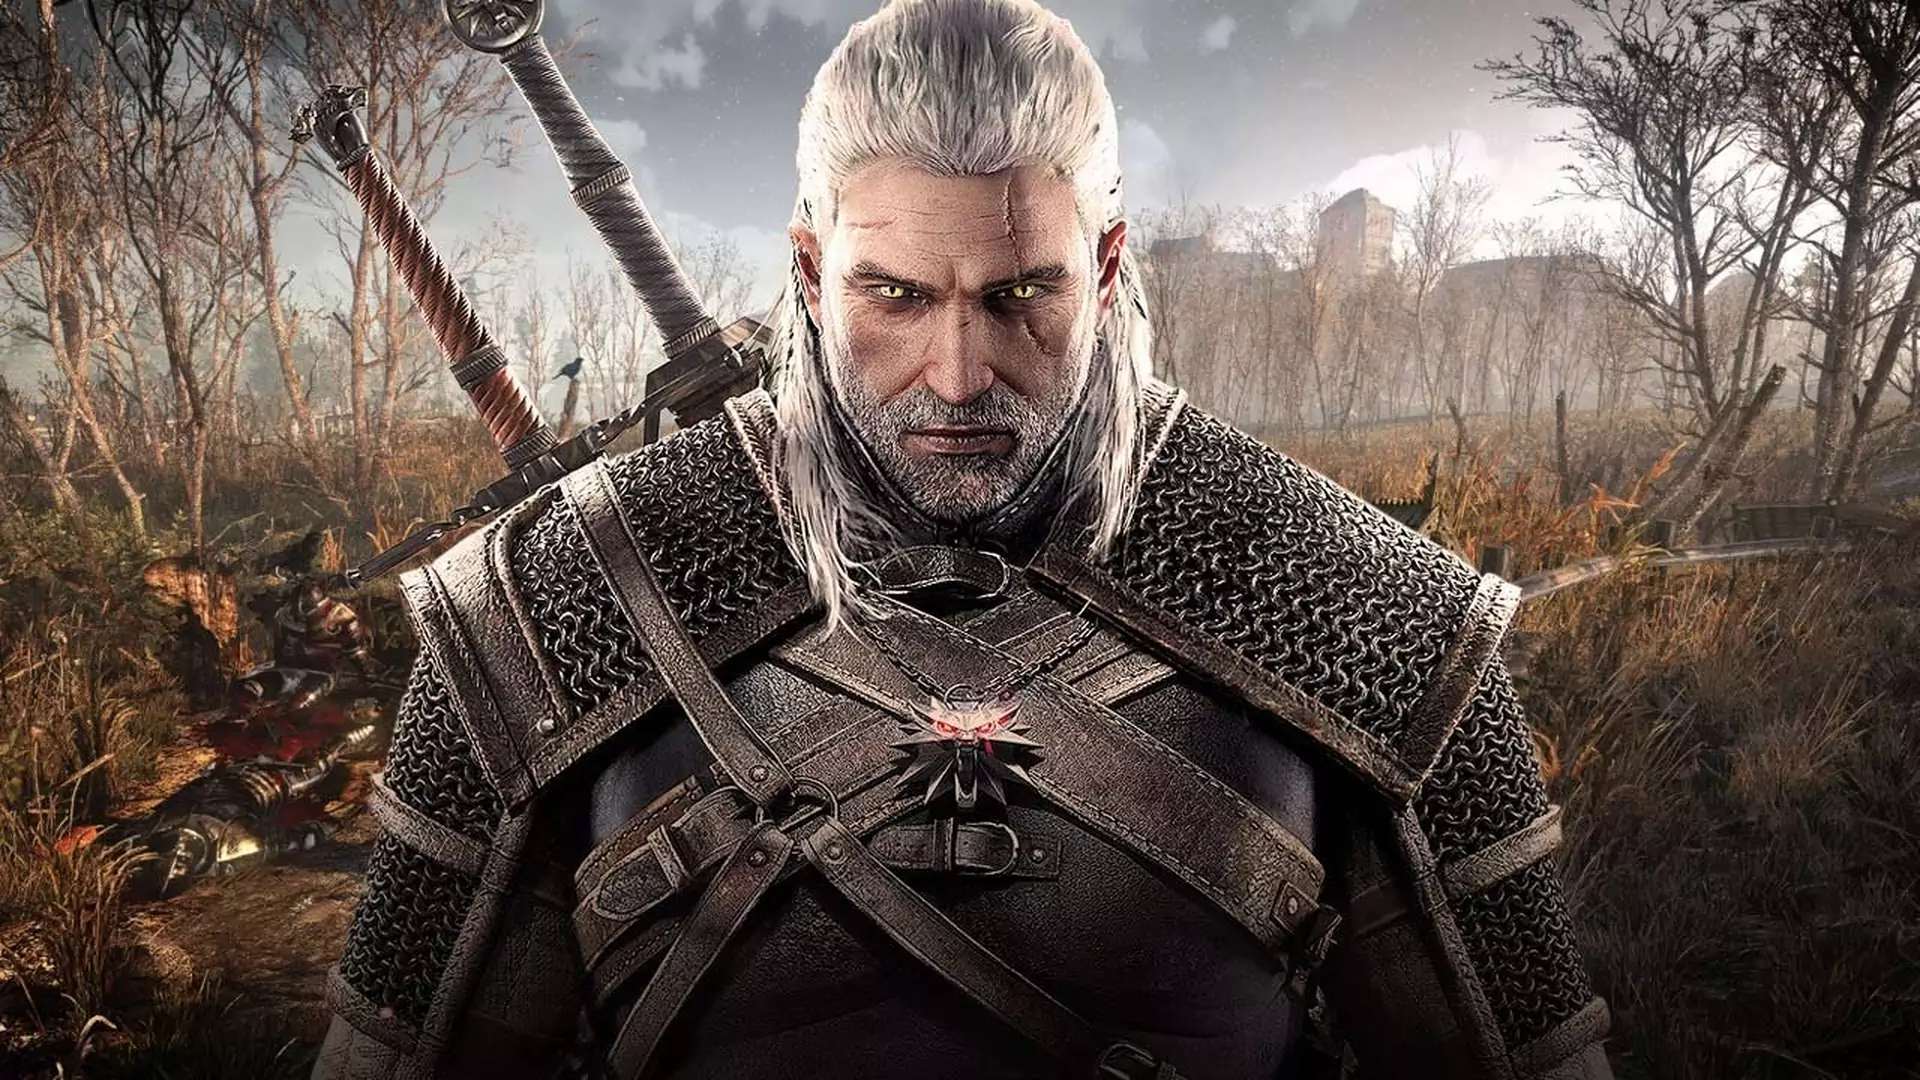 Henry Cavill w roli Geralta z Rivii - Netflix pokazuje pierwsze zdjęcie z planu serialu